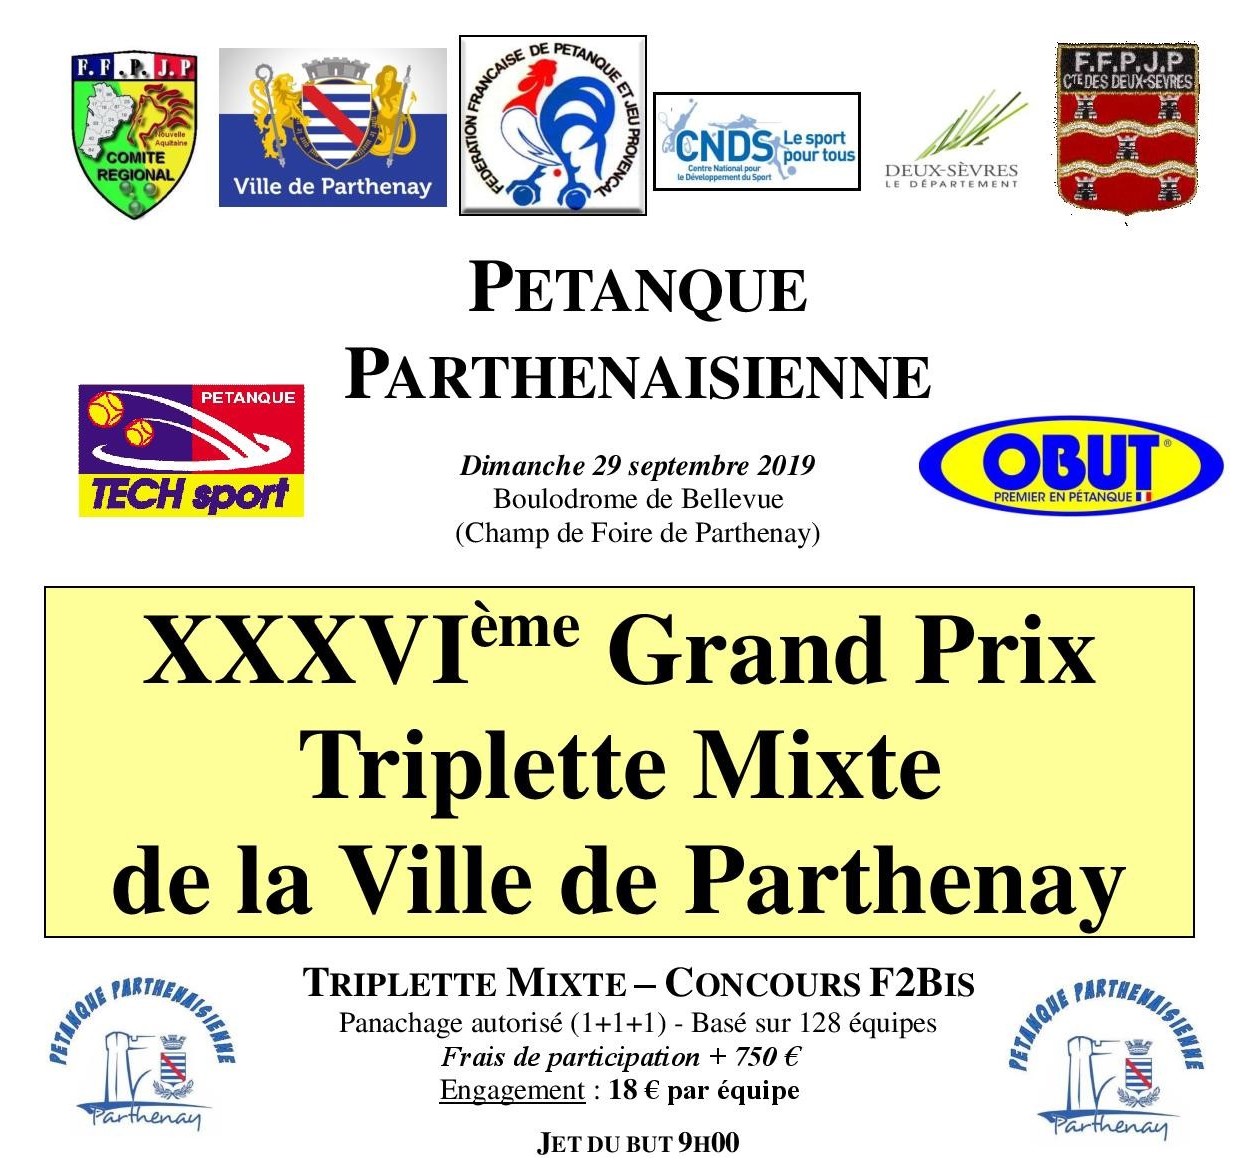 XXXVI GP Triplette Mixte de Parthenay